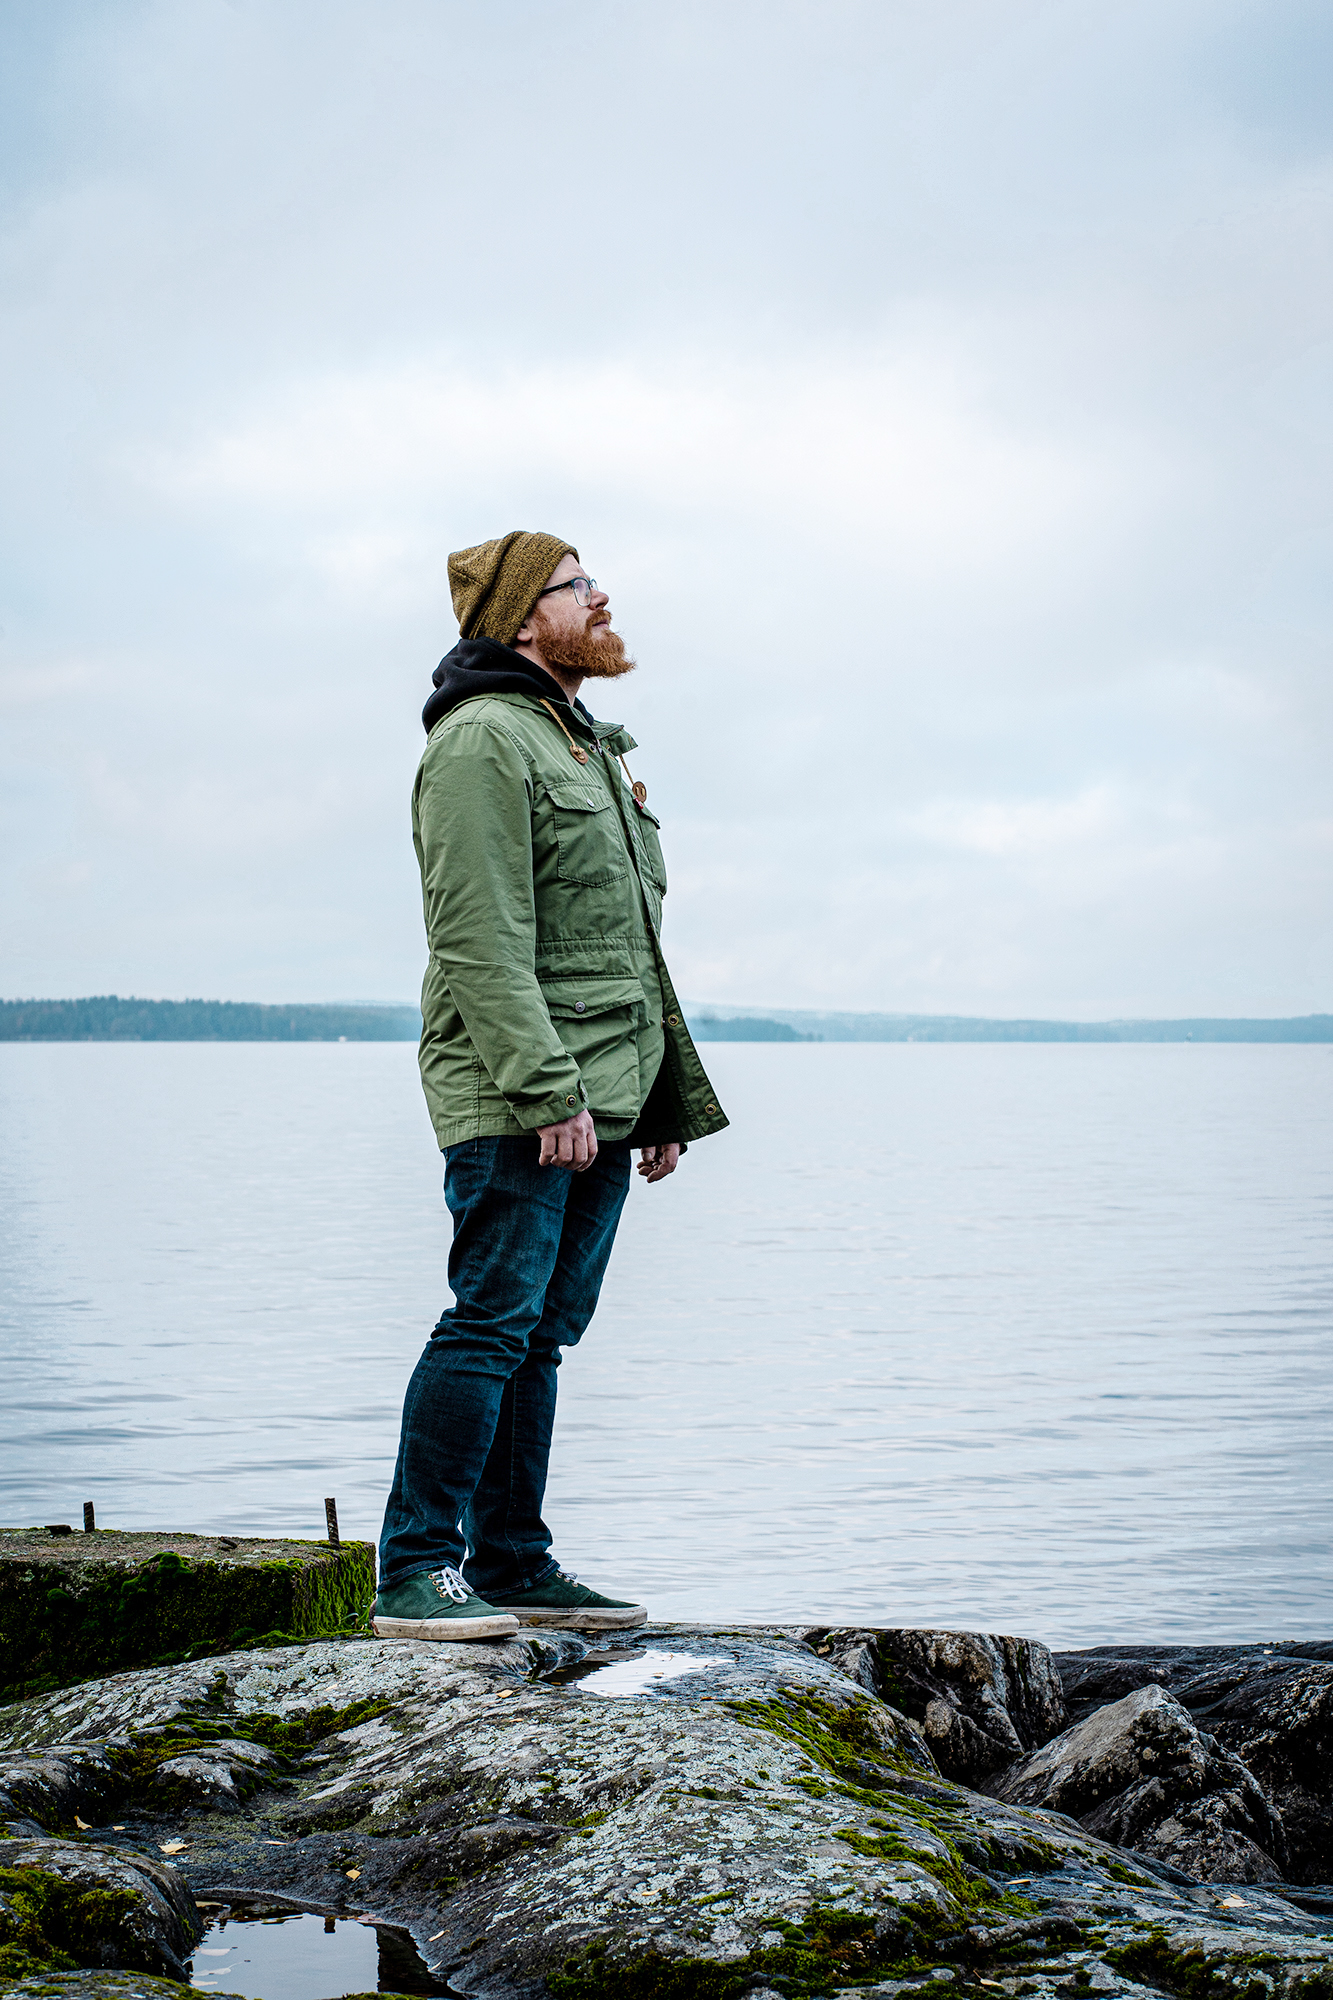 Parrakas henkilö seisoo kallion päällä järven rannassa katsoen yläviistoon